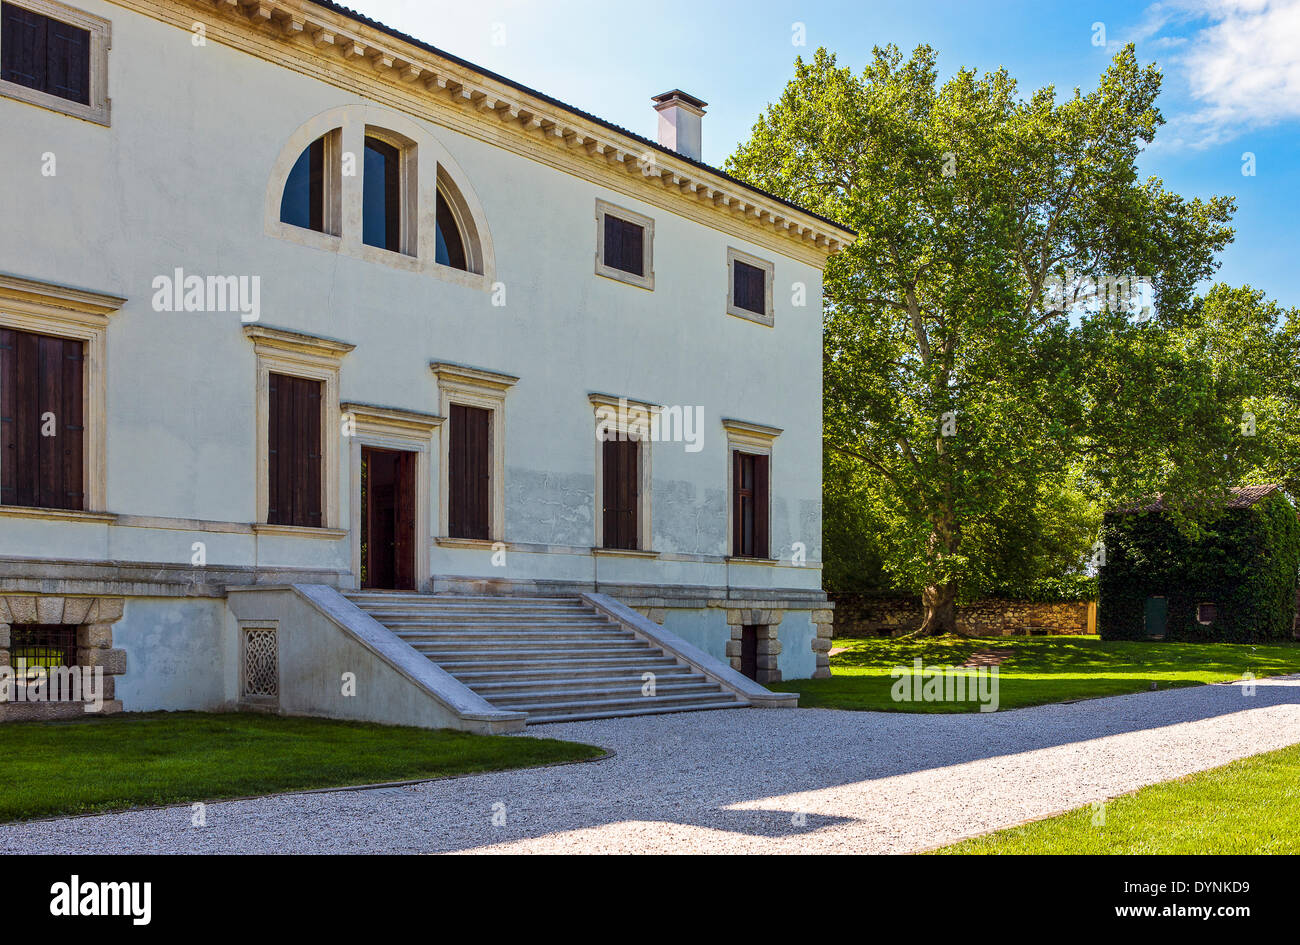 Italy,Veneto, Bagnolo di Lonigo, the rear entry of Villa Pisani, architect Andrea Palladio. Stock Photo